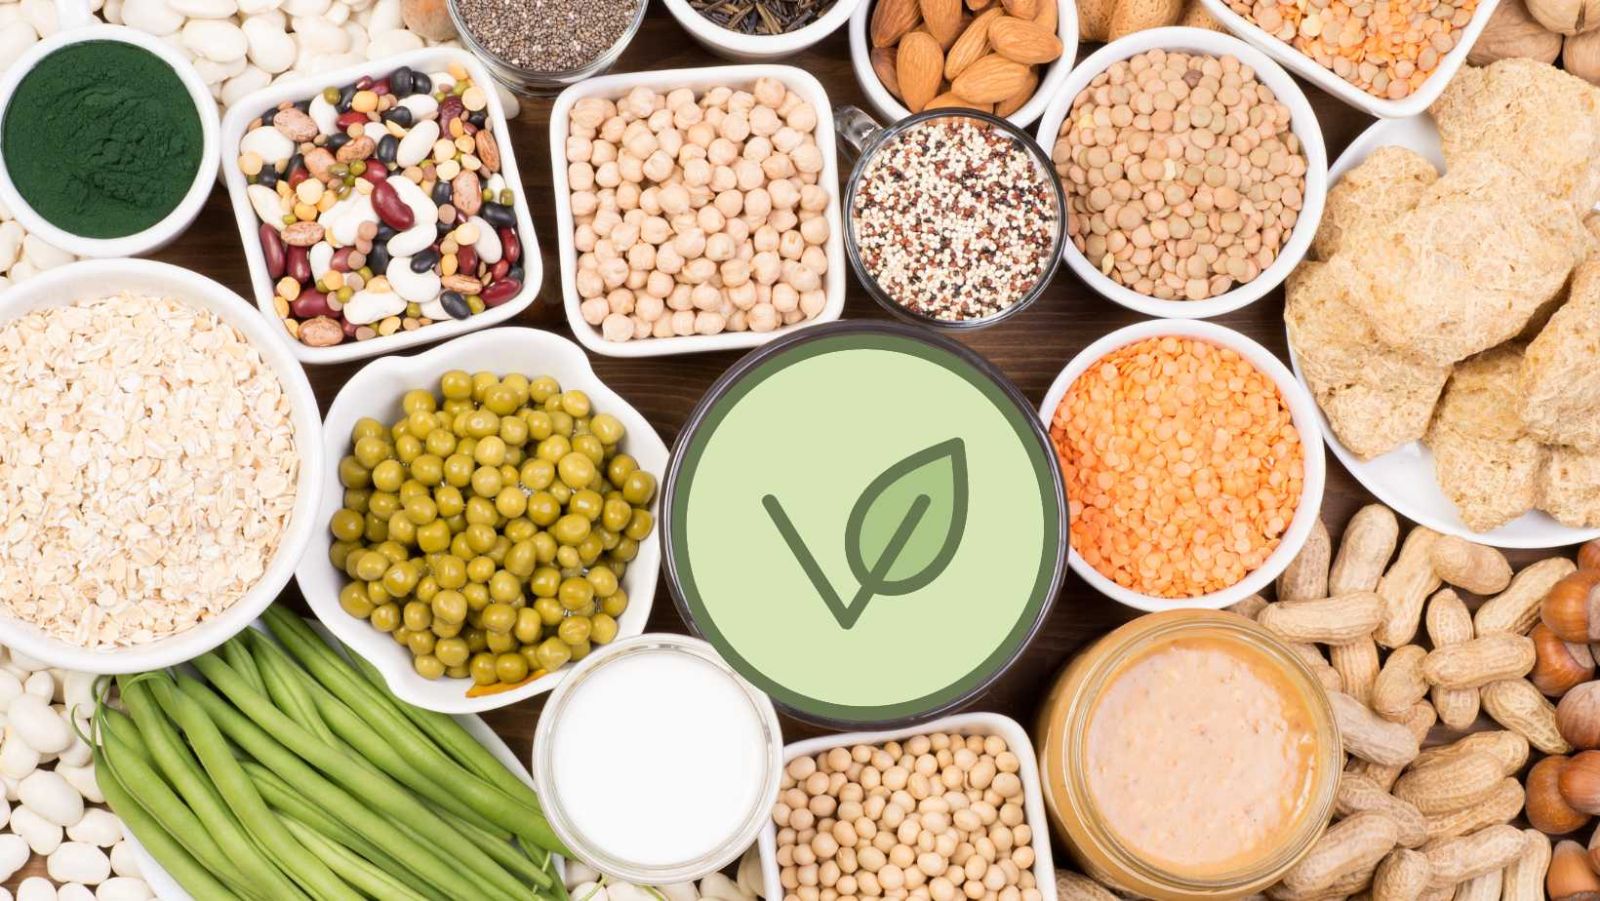 Végan, végétarien, pesco-végétarien : quel régime est le plus sain ? Une étude belge compare leur qualité nutritionnelle